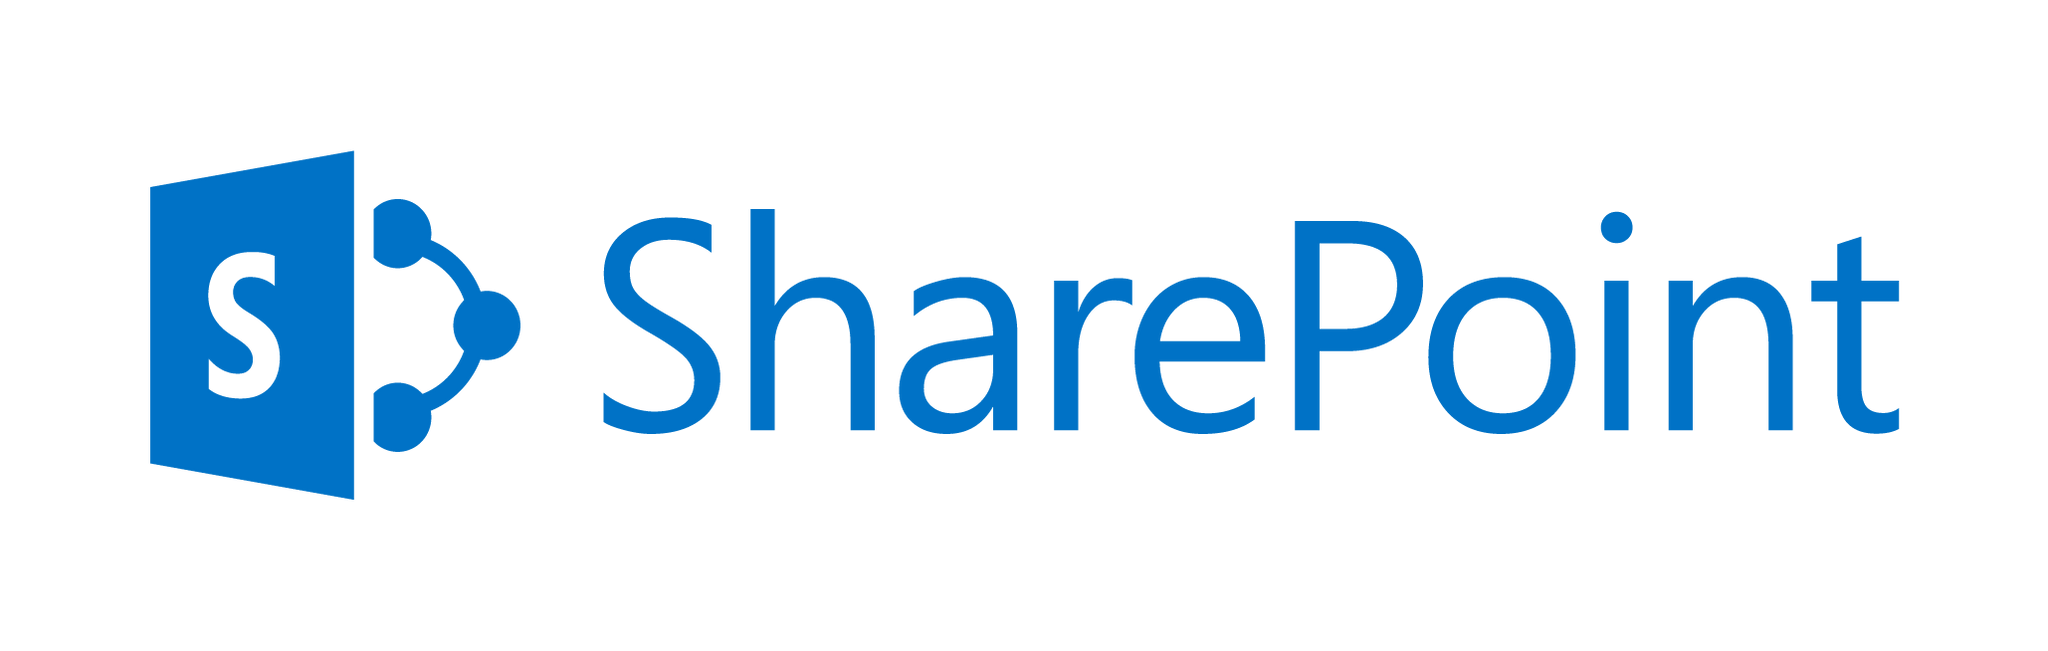 Leállt a Microsoft Sharepoint?